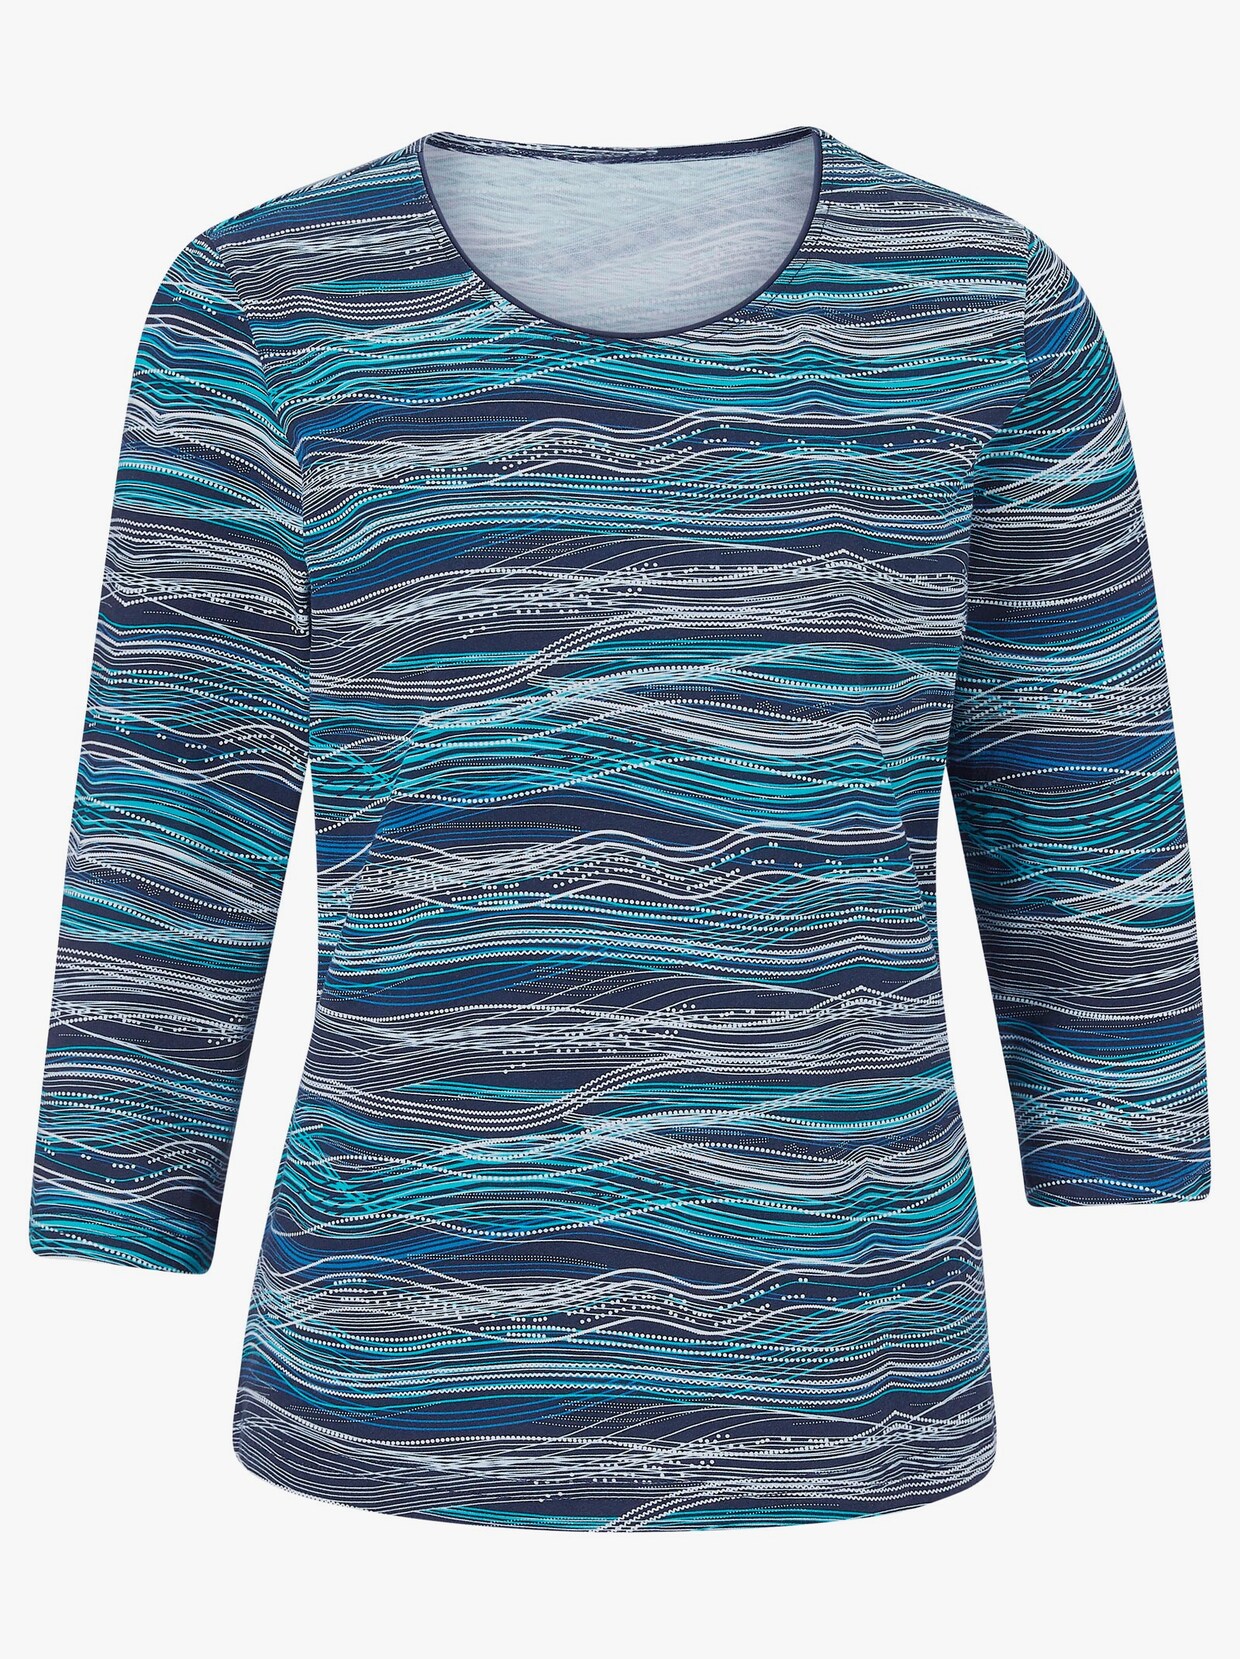 Tričko s 3/4 rukávem - Námořnická modrá-tyrkysová-vzor